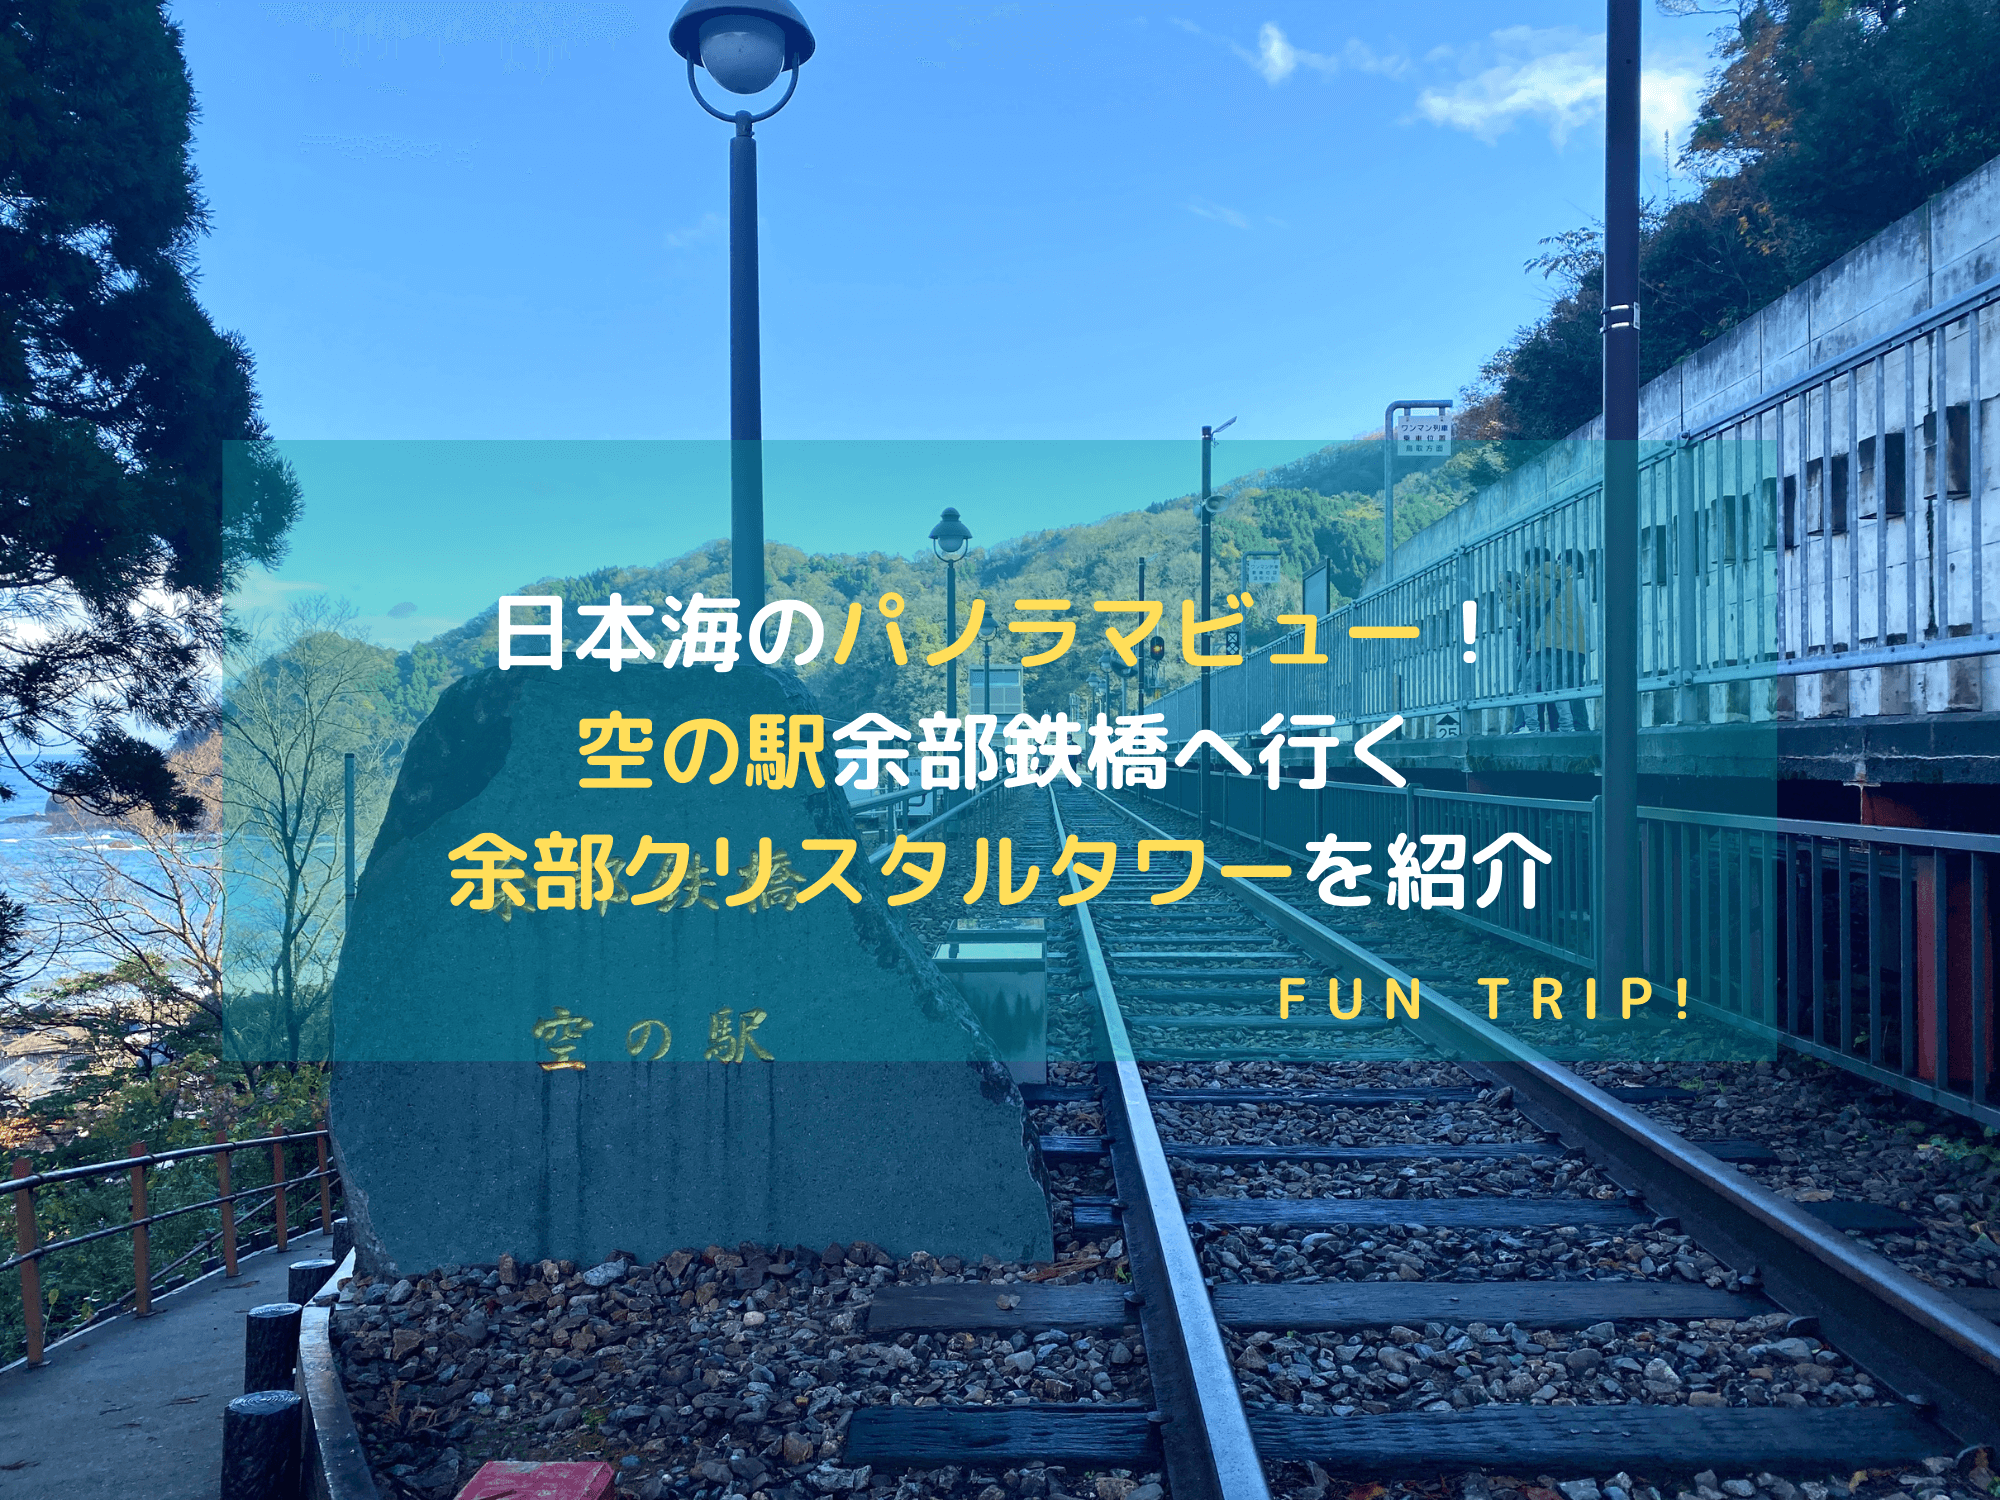 兵庫県美方郡の余部駅にある「空の駅」